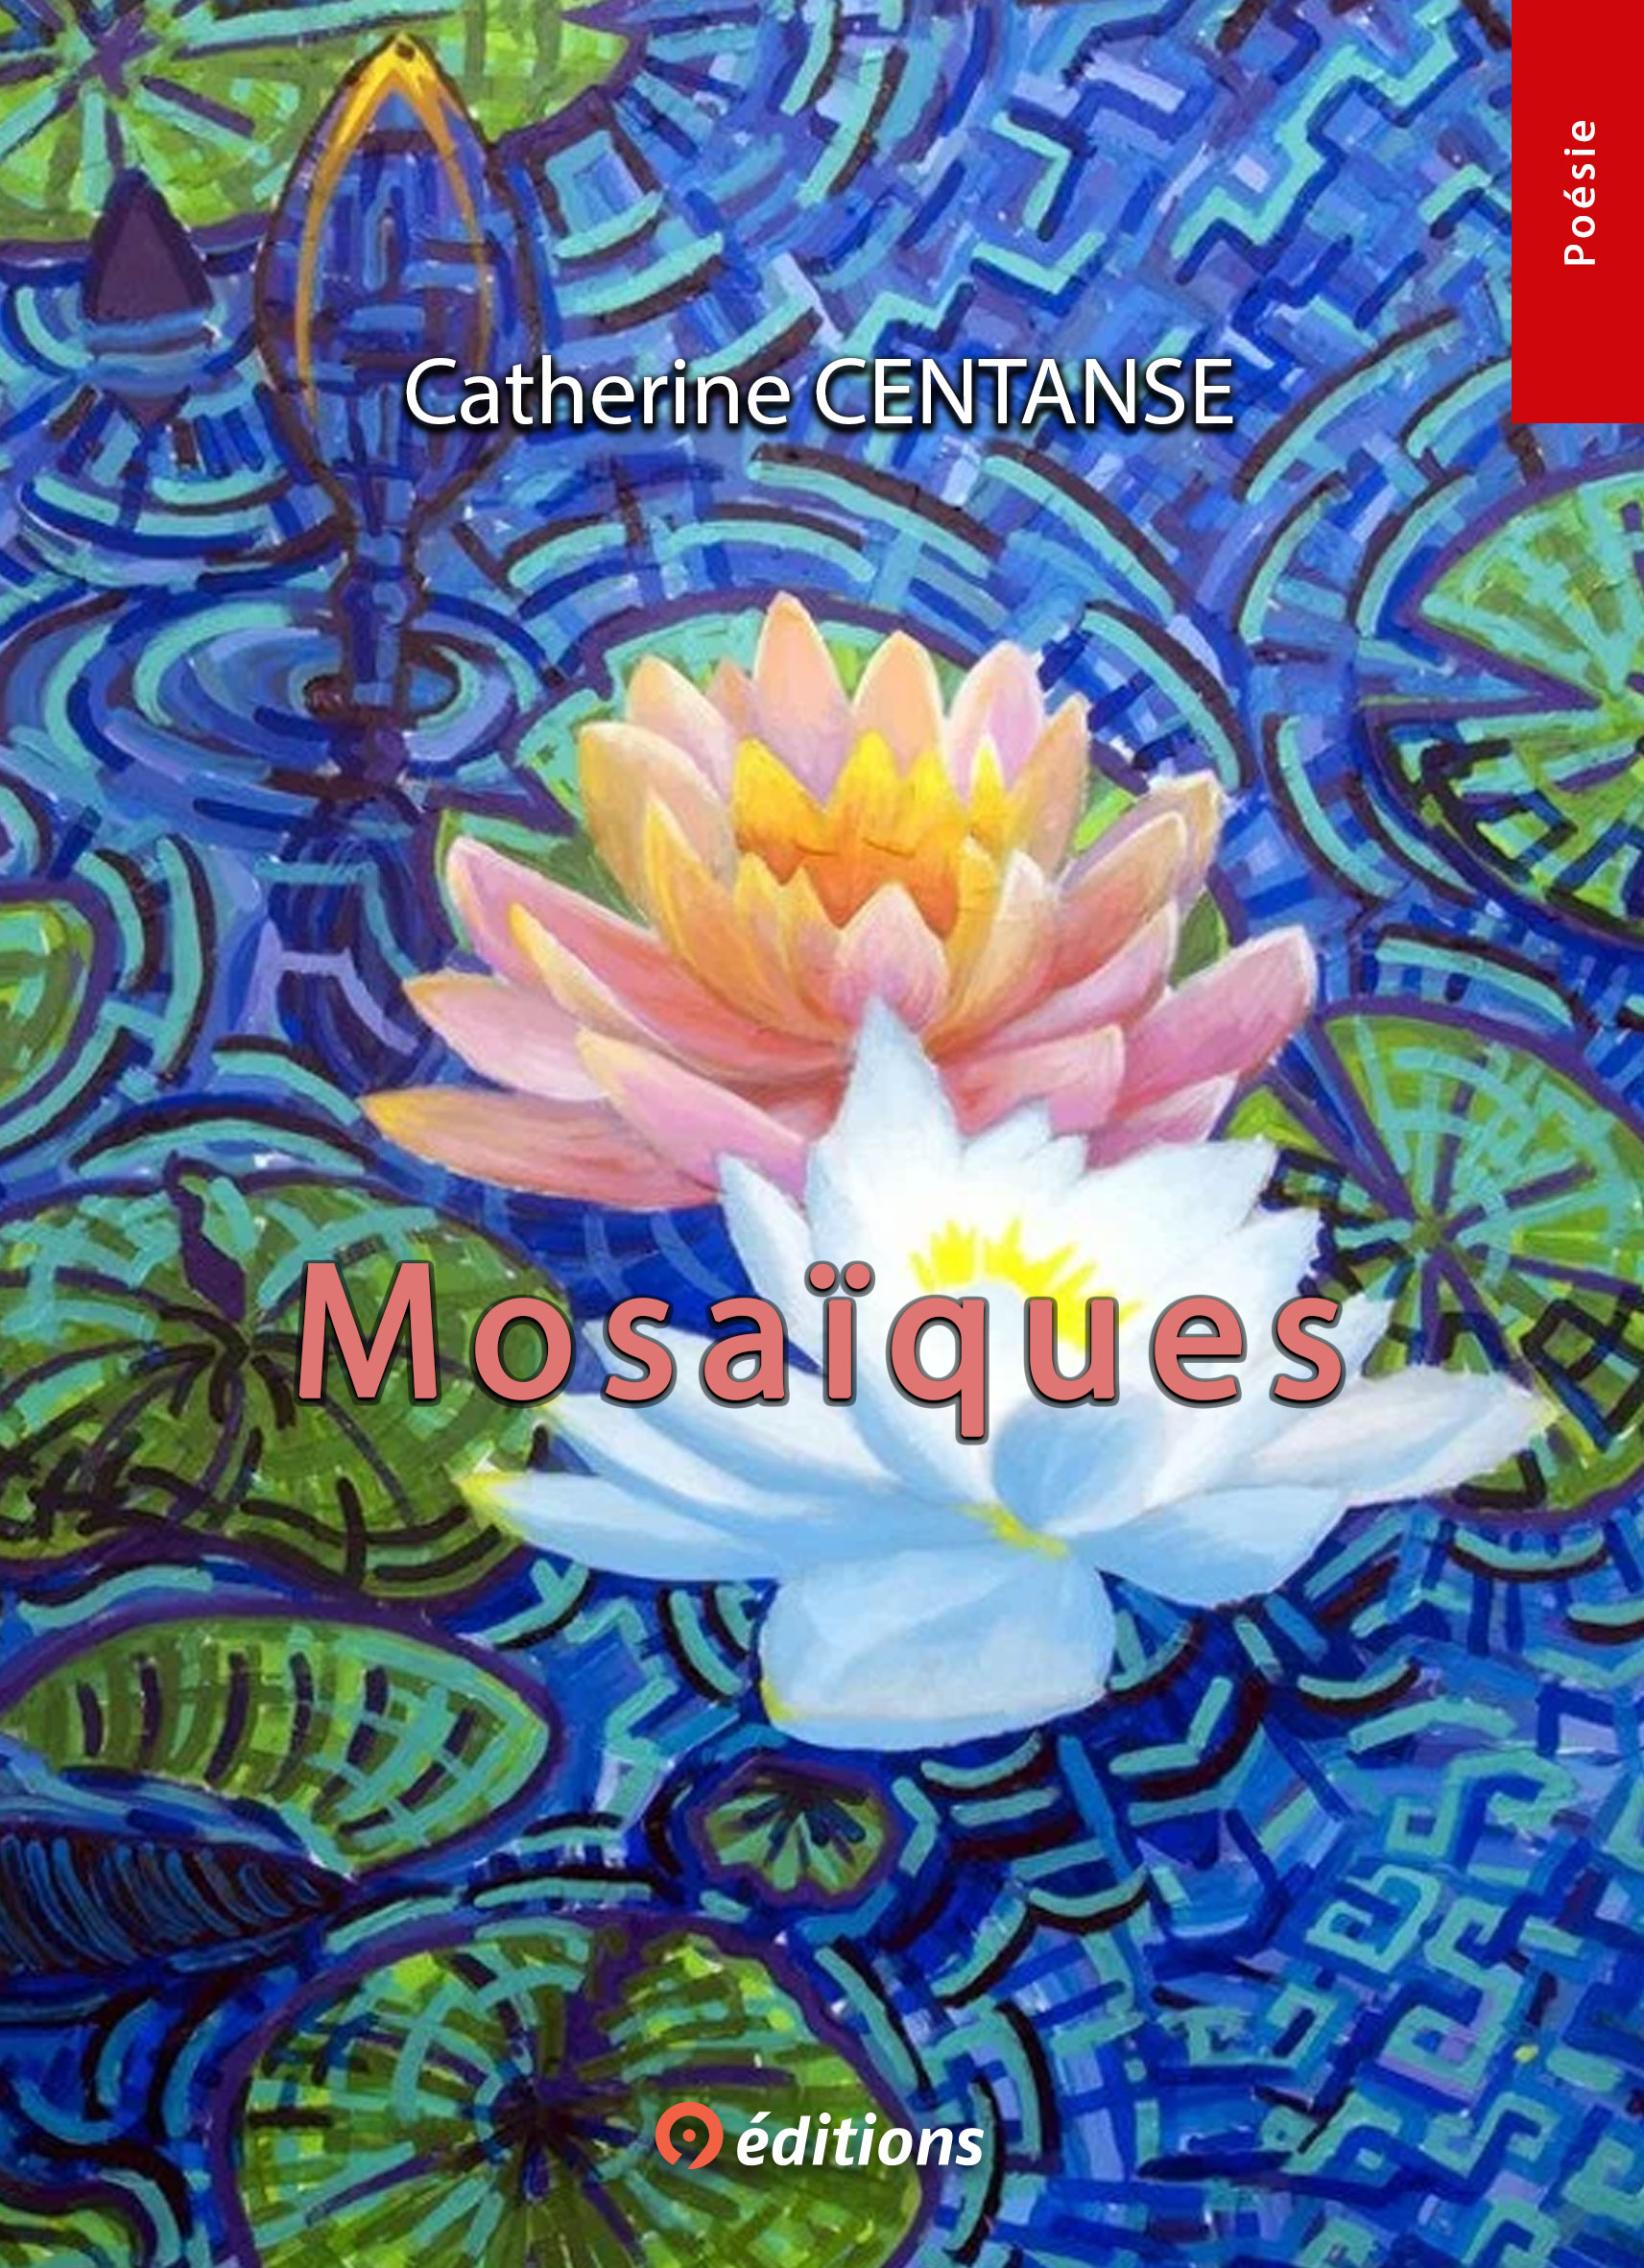 Mosaïques Catherine Centanse 9 éditions